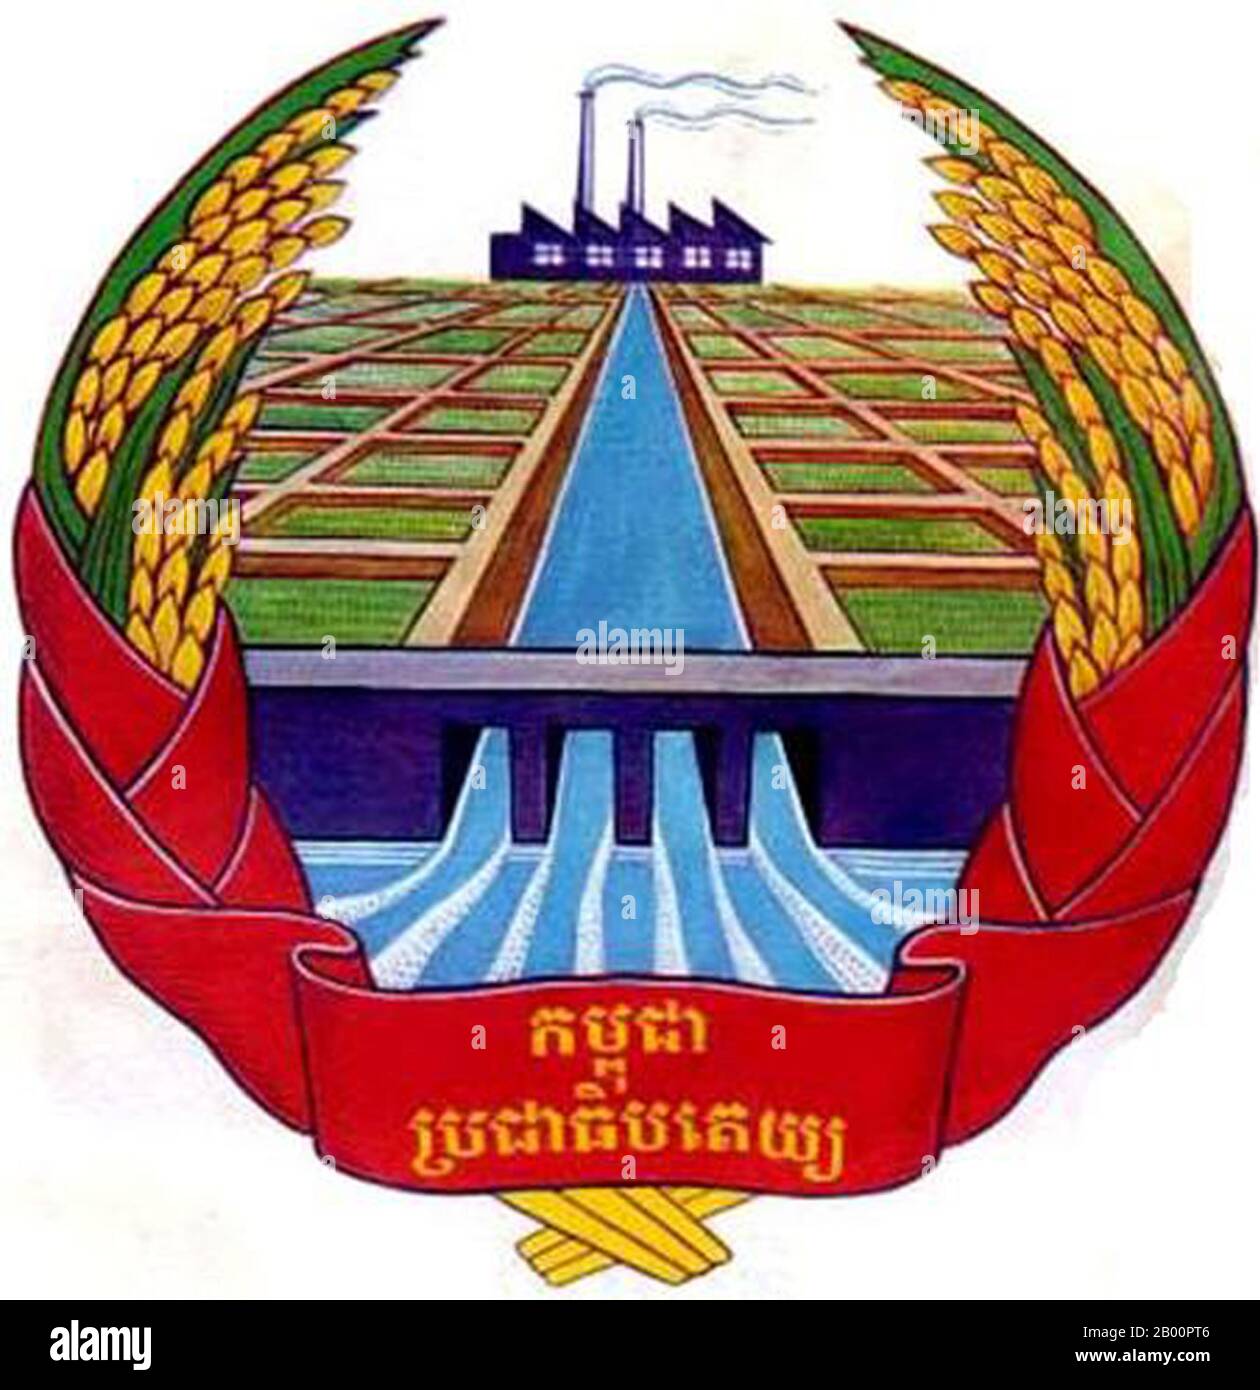 Kambodscha: Wappen der kommunistischen republik Kampuchea (1975-1979). Die Symbolik feiert theoretische landwirtschaftliche und industrielle Fortschritte mit Schwerpunkt auf Bewässerungsarbeiten, Reisfeldern und einer Fabrik. Stockfoto